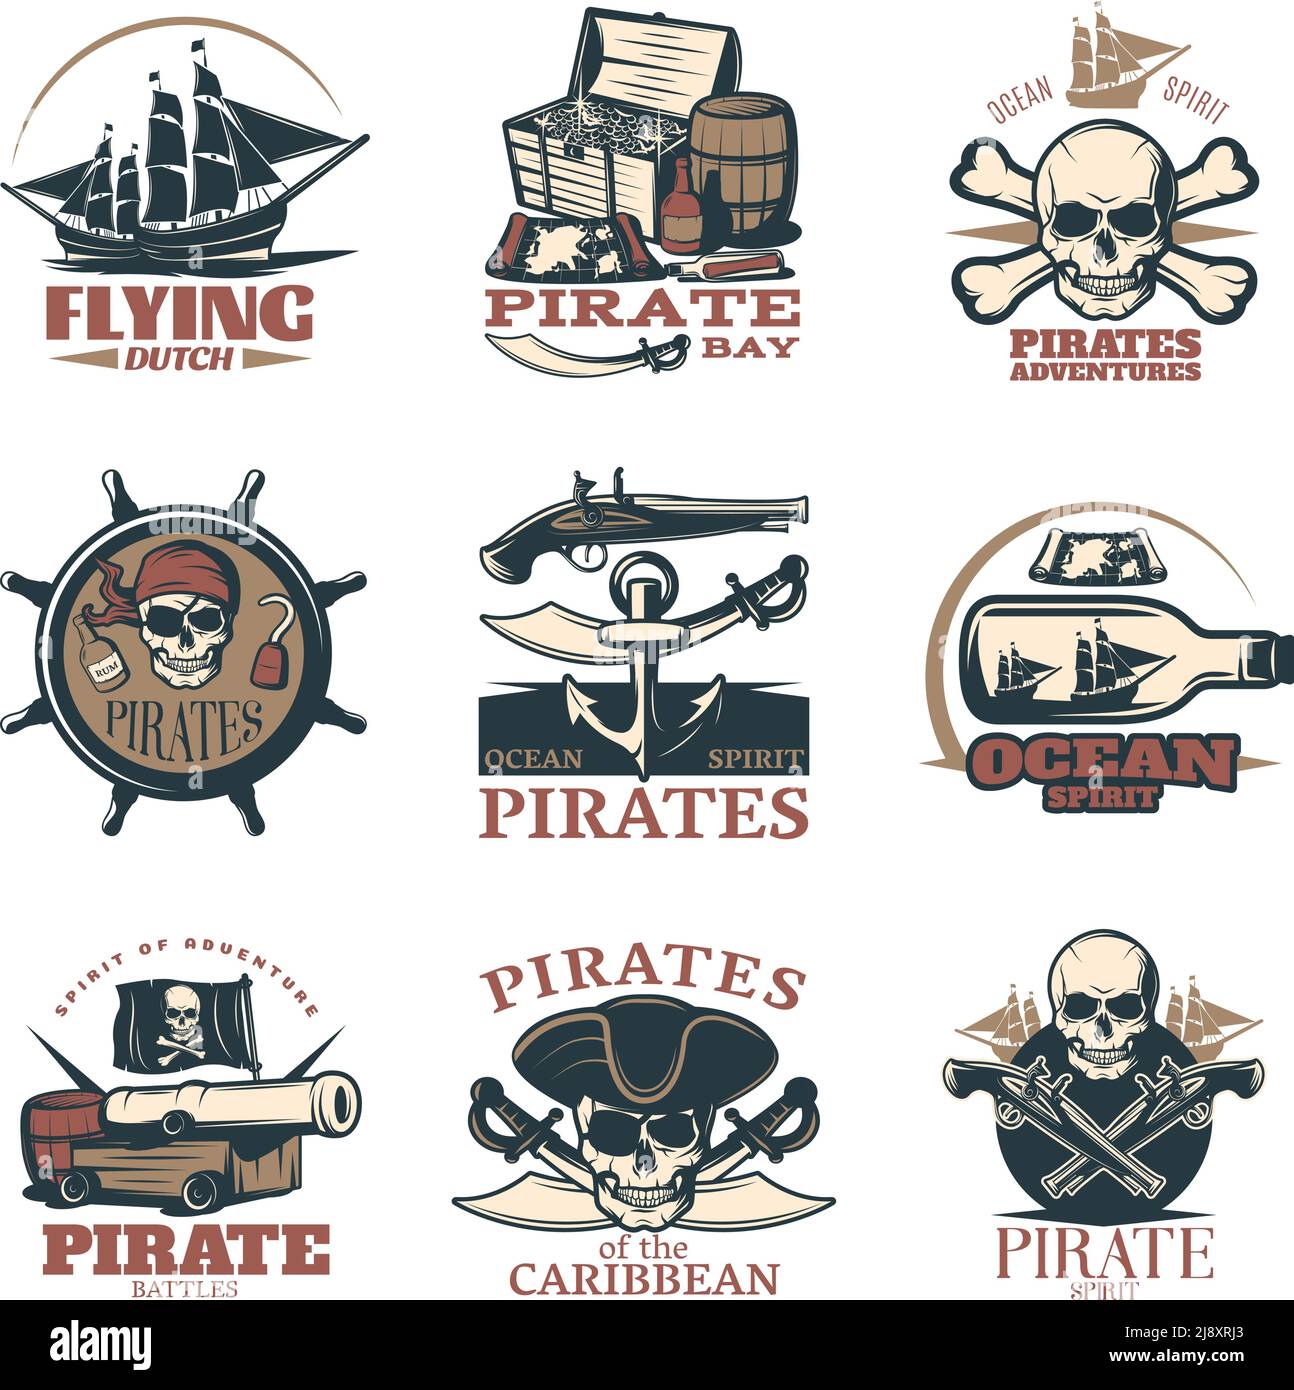 L'emblème des pirates est mis en couleur avec les pirates d'aventures de pirate Les combats de pirates des Caraïbes et de nombreux titres différents illustration de vecteur Illustration de Vecteur